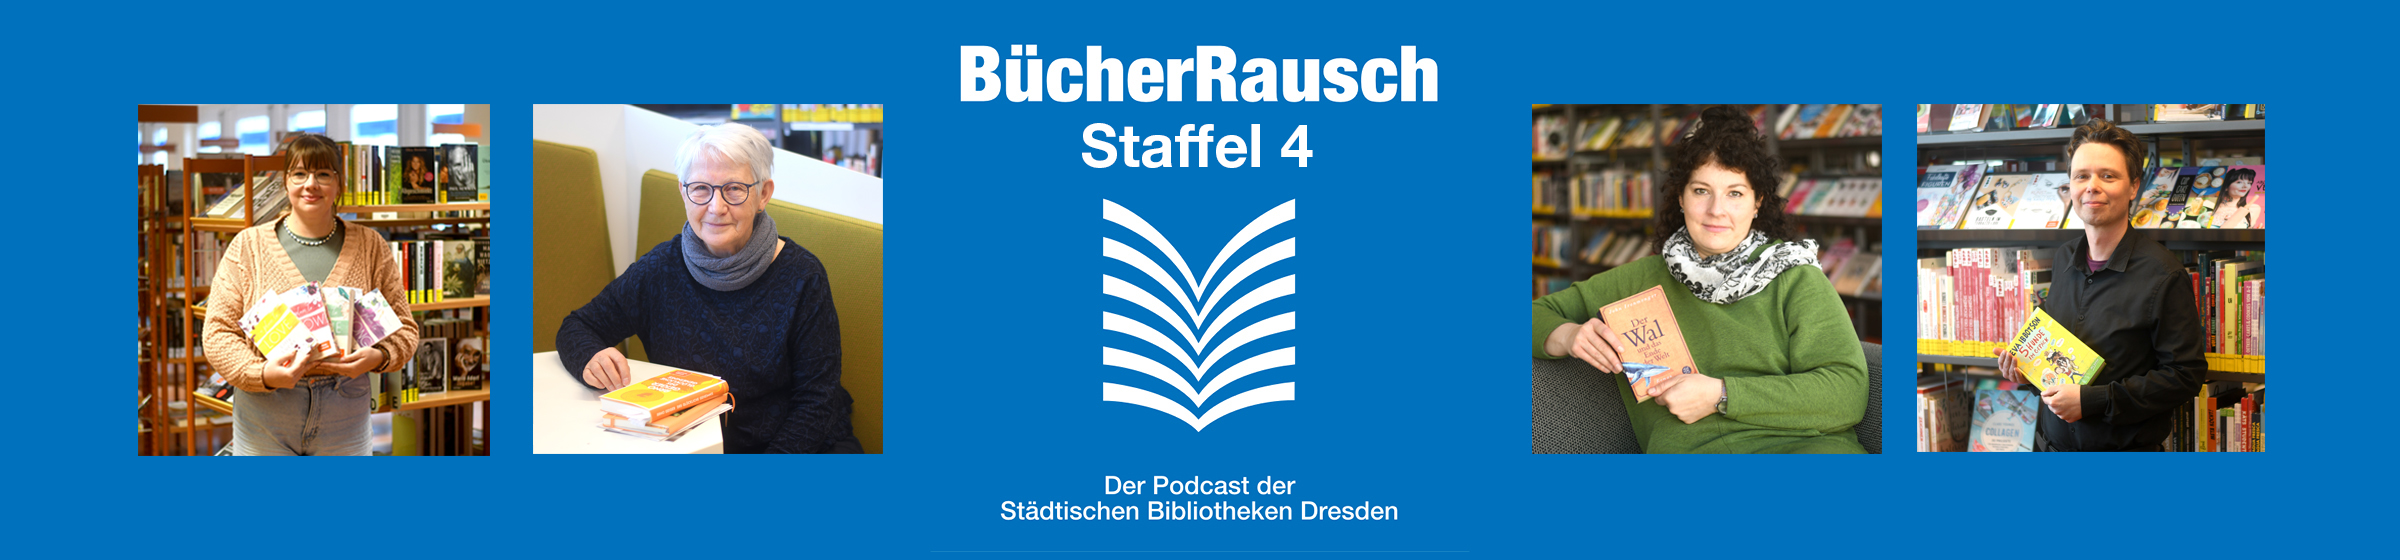 Logo des Bücherrausch-Podcast Staffel 4 sowie 4 Fotos von Kolleg*innen